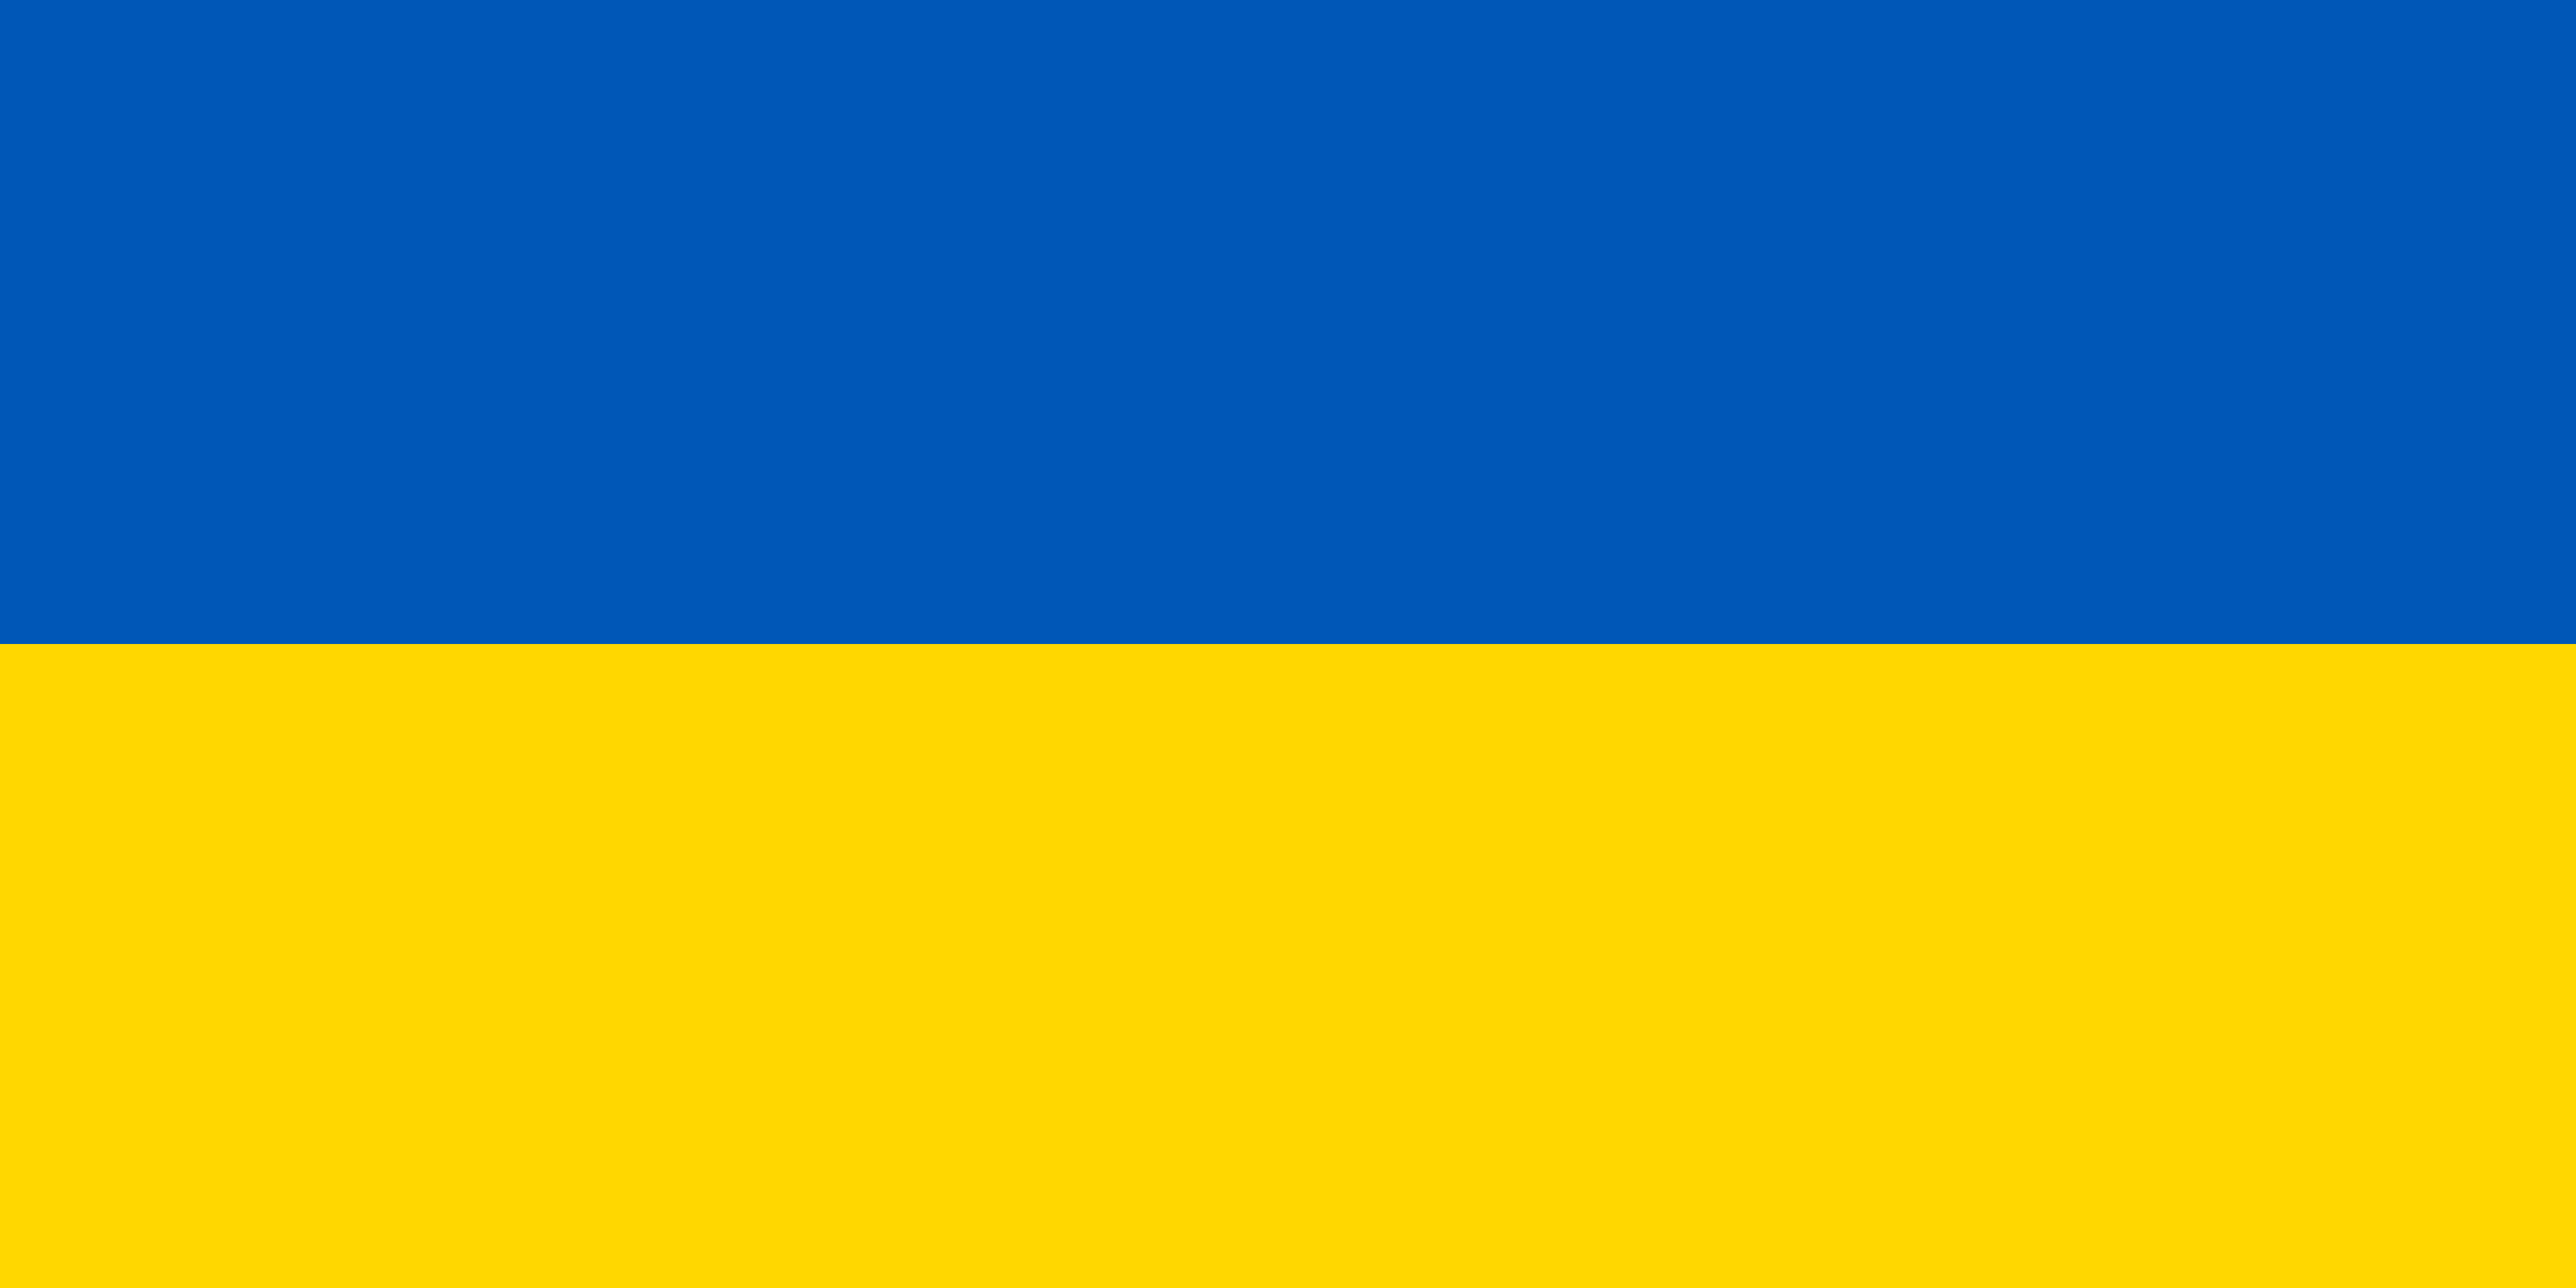 L'immagine raffigura il blu e il giallo della bandiera ucraina